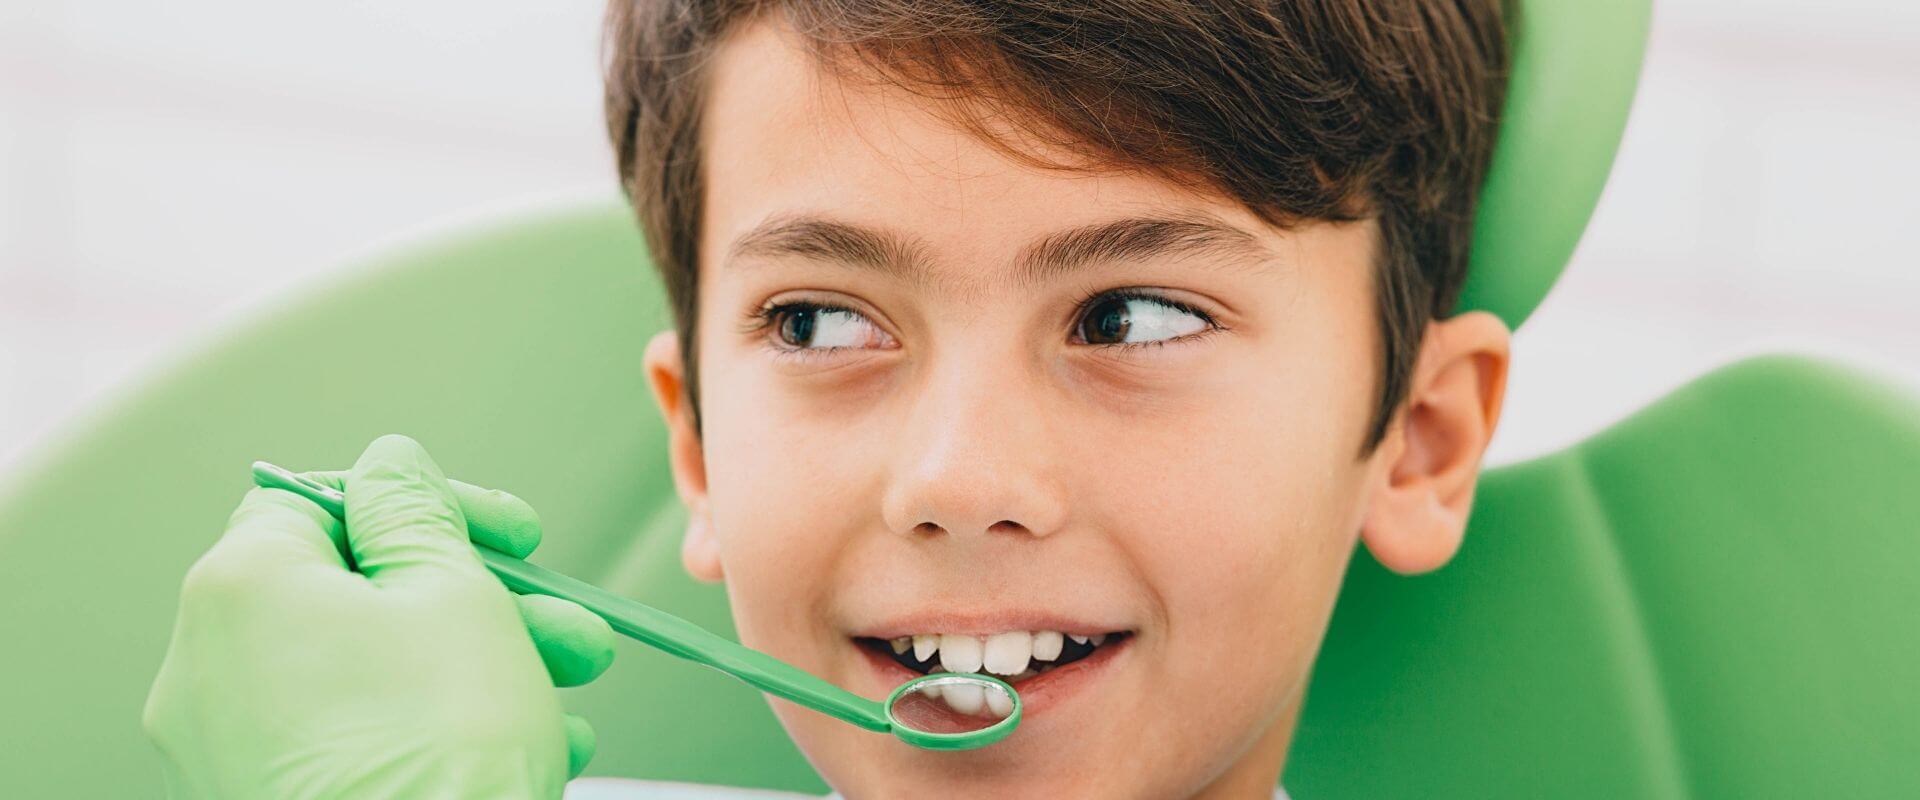 Headerbild: Kinder & Jugendliche beim Zahnarzt